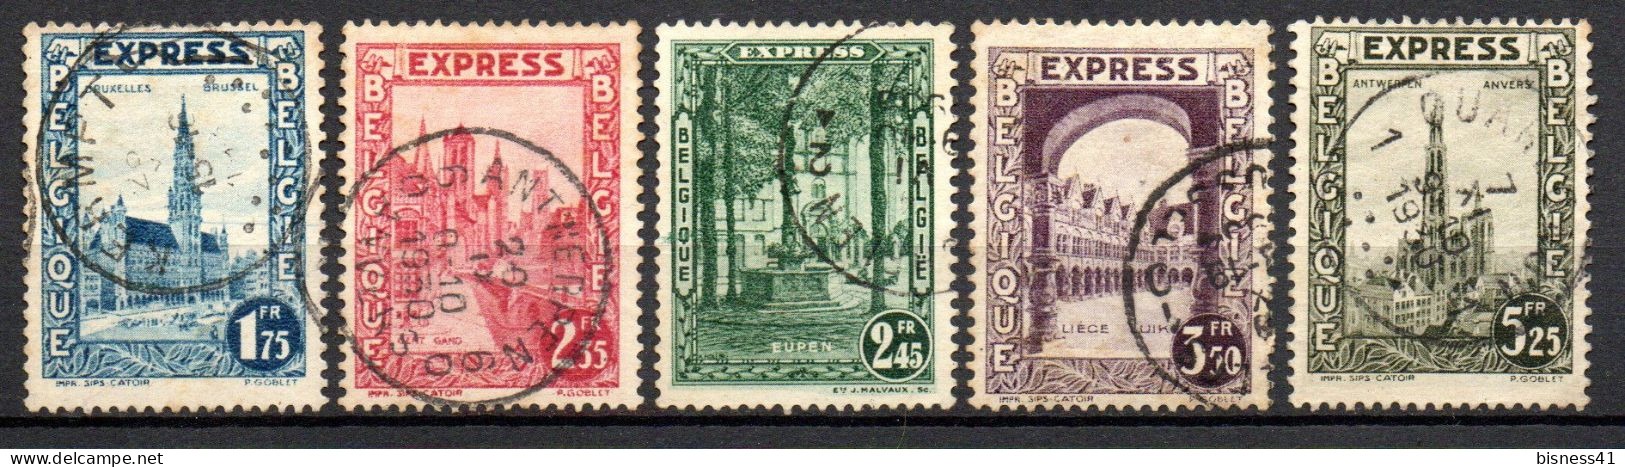 Col33 Belgique Belgium 1929 Expres N° 1 à 5 Oblitéré Cote : 26,50€ - Usati